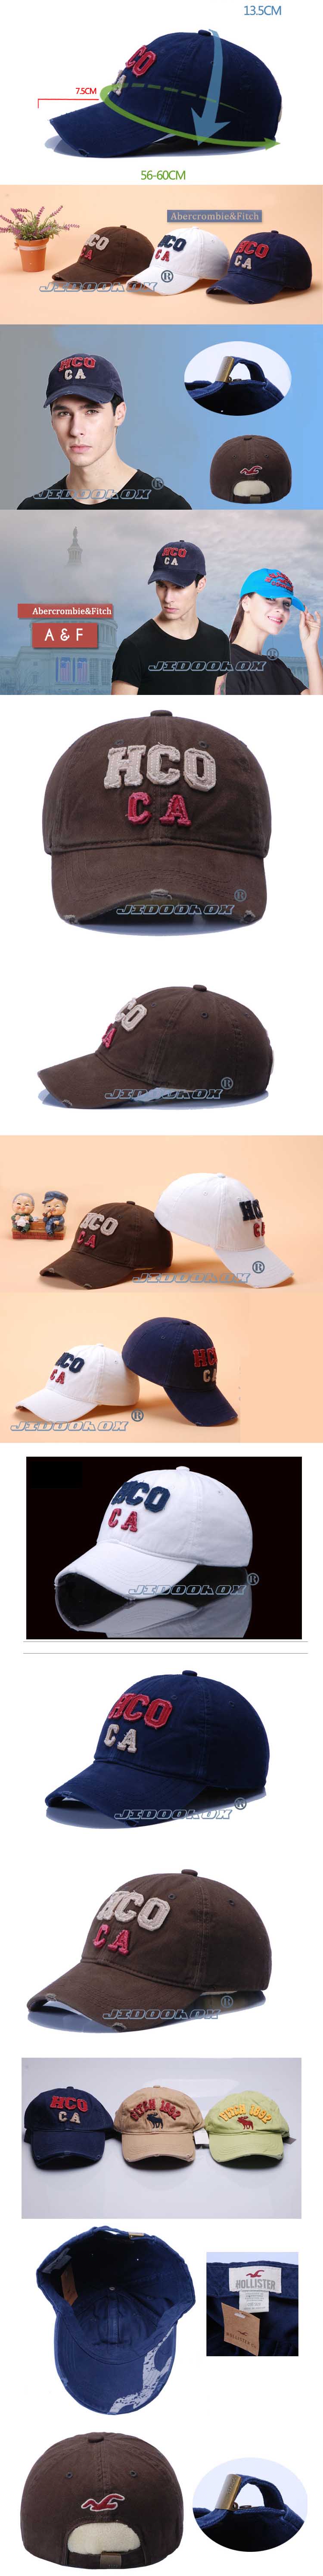 jual topi pria branded, cari topi pria branded online dengan harga murah dan kualitas import hanya ada di store.pakaianfashionpria.com pusat topi pria online terlengkap